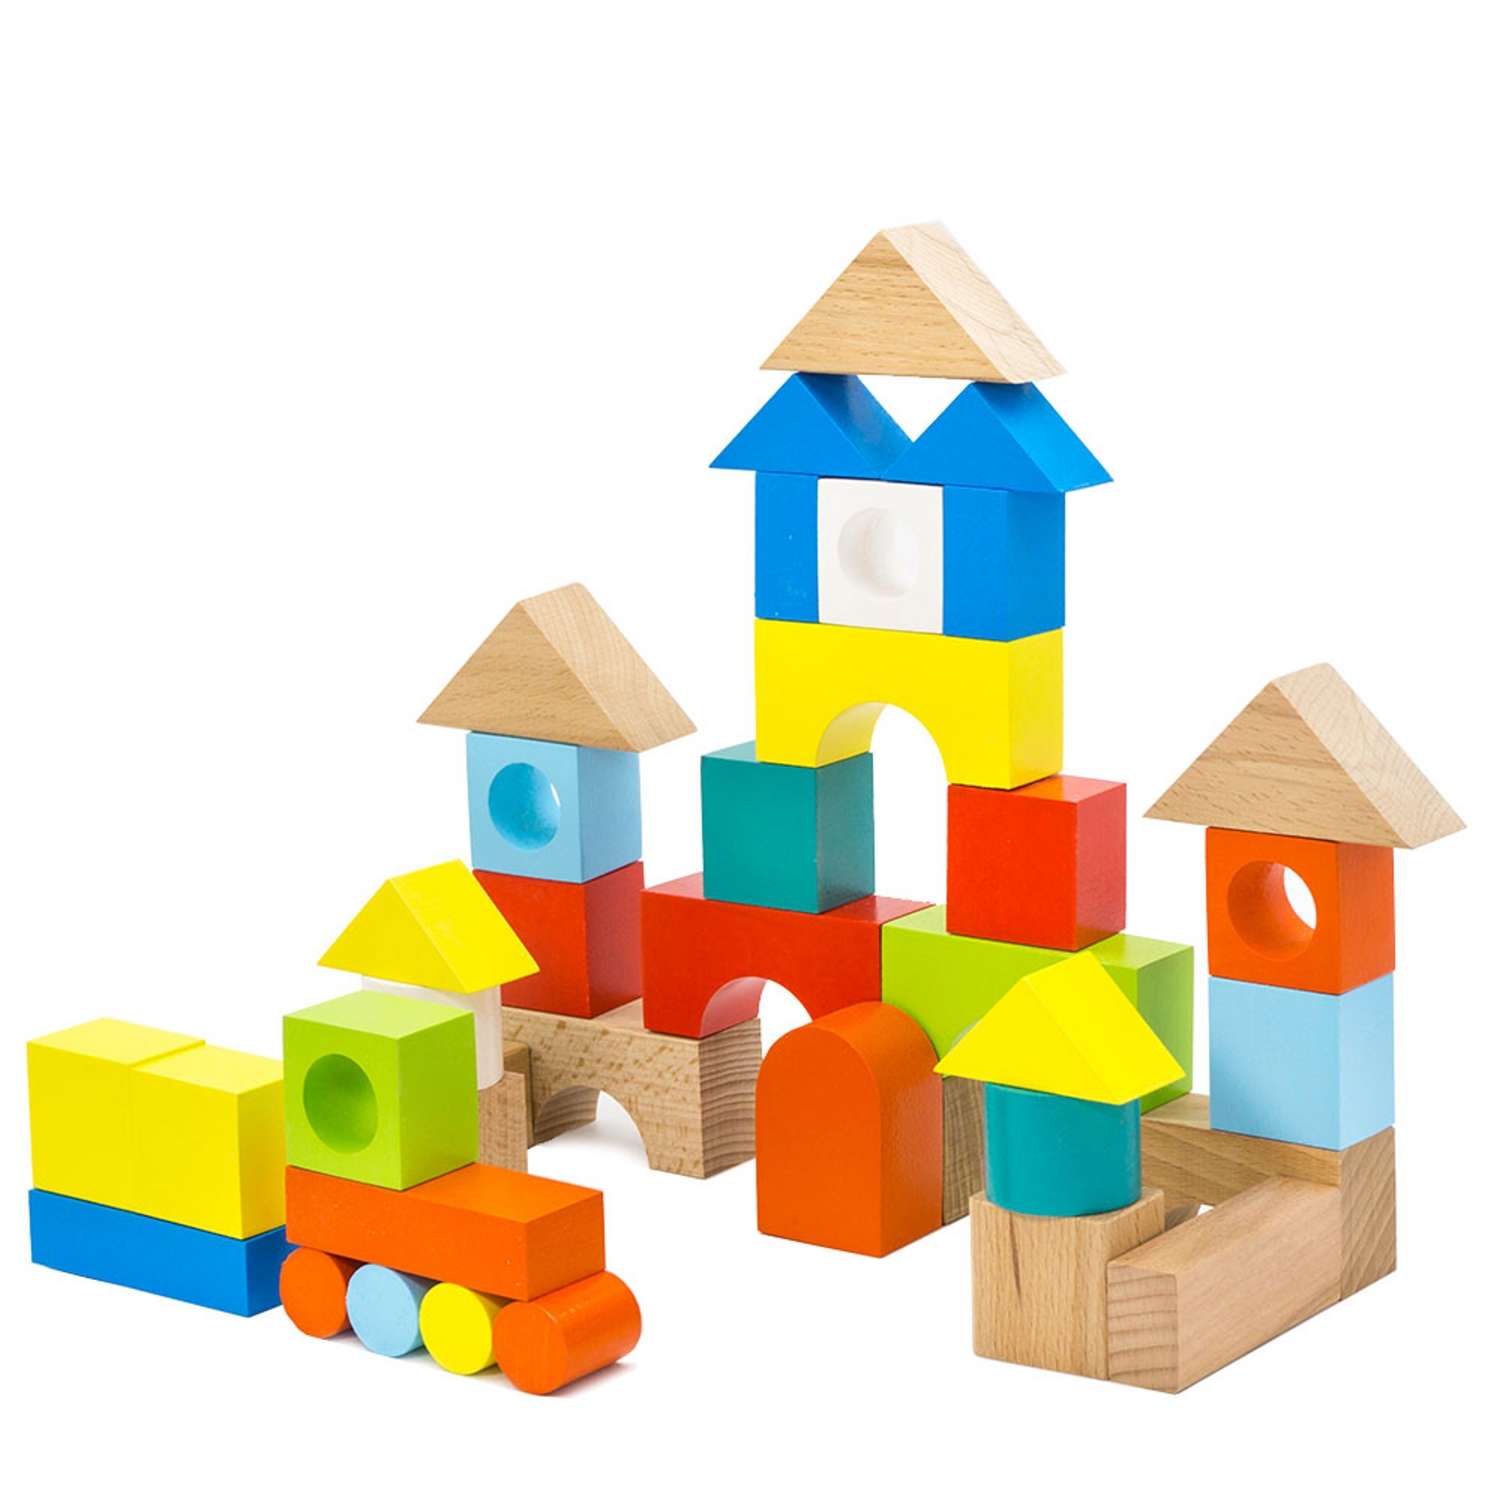 Конструктор Городок Alatoys наповоловину окрашенный развивающая деревянная Монтессори игрушка для малышей и детей - фото 1